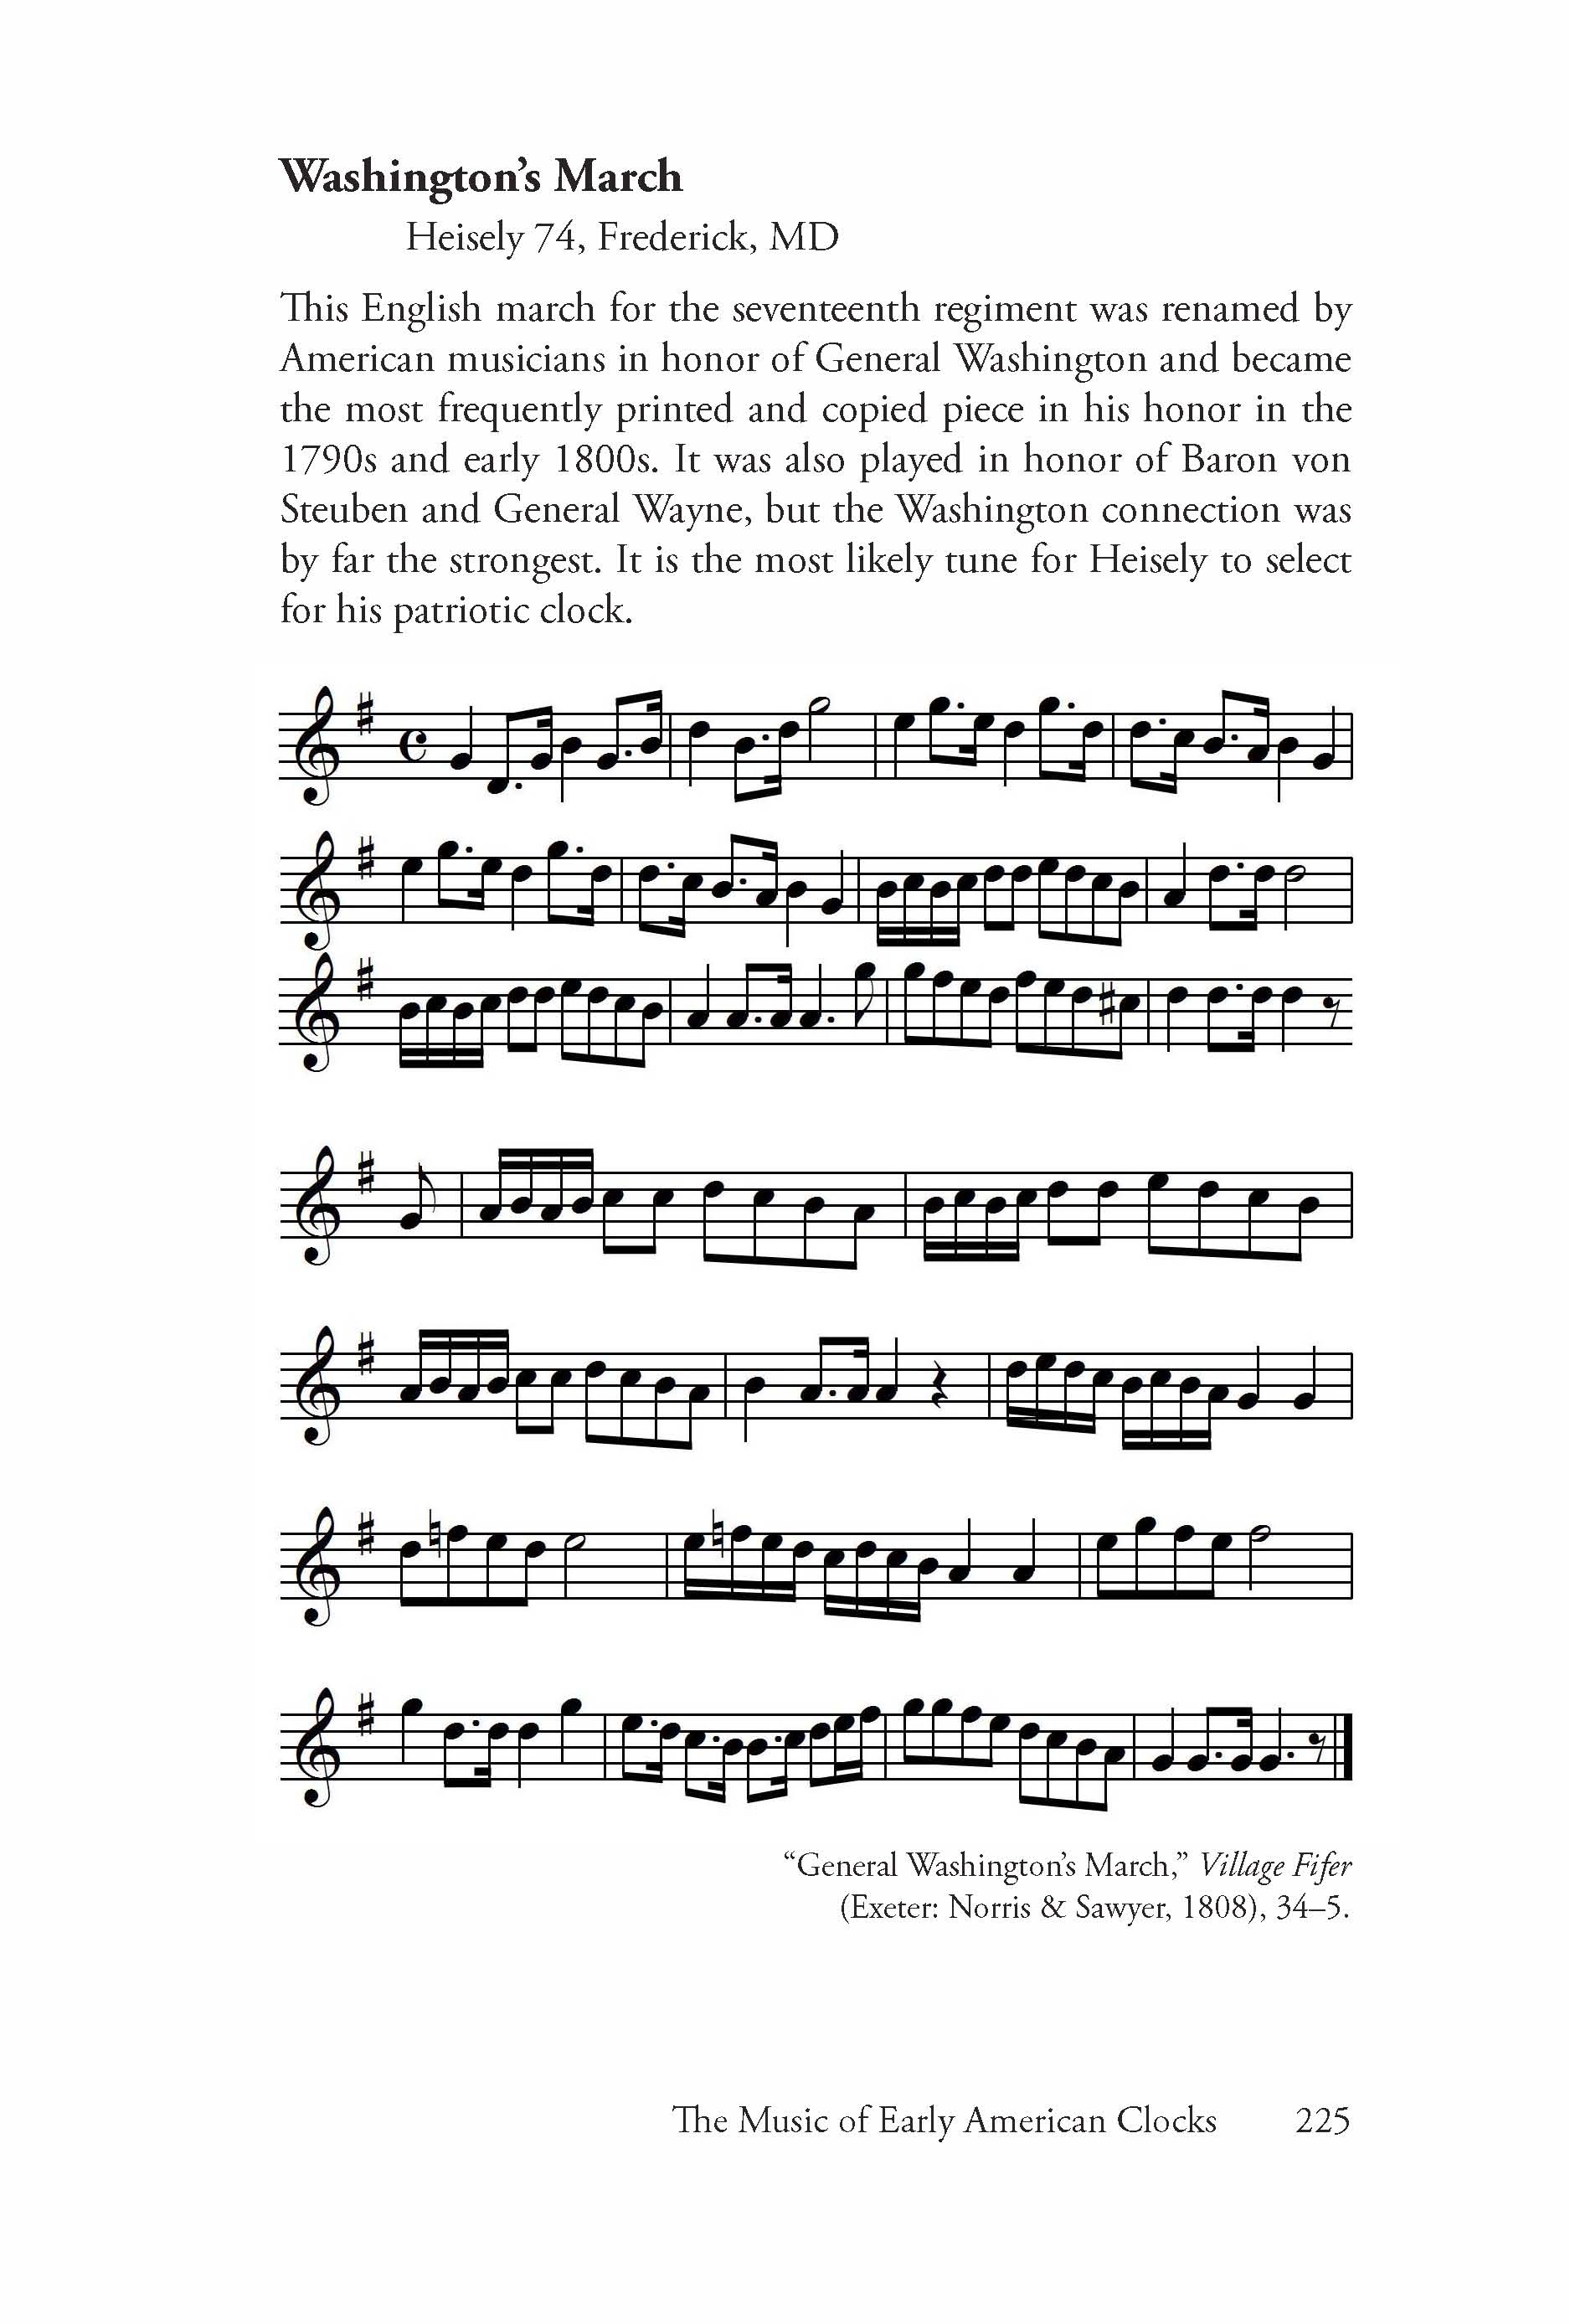 BOOK Musical Clocks of Early America 1730-1830 Sullivan & Van Winkle Keller 